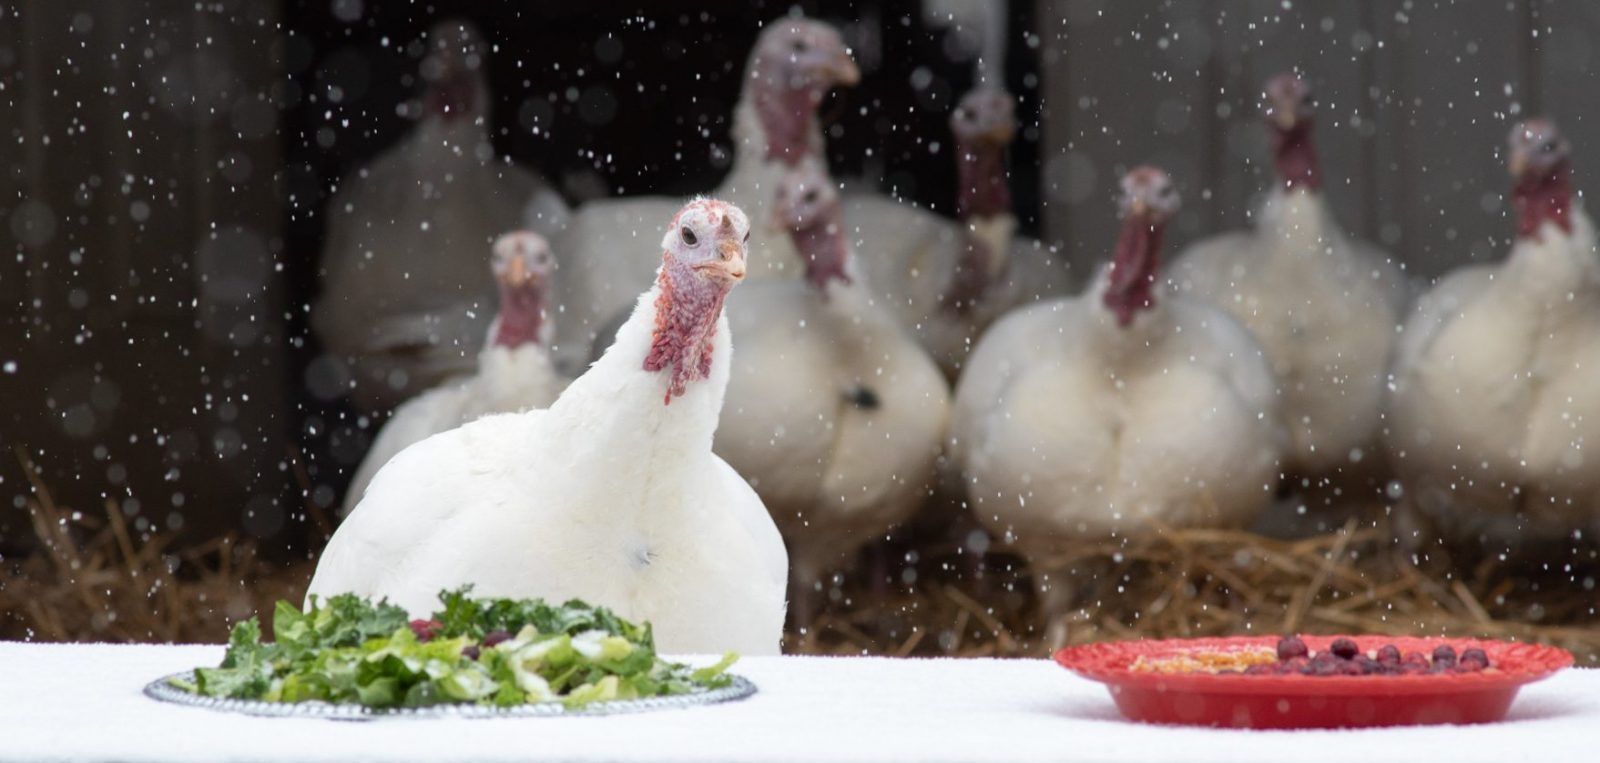 Rescued turkeys enjoying a celebratory feast